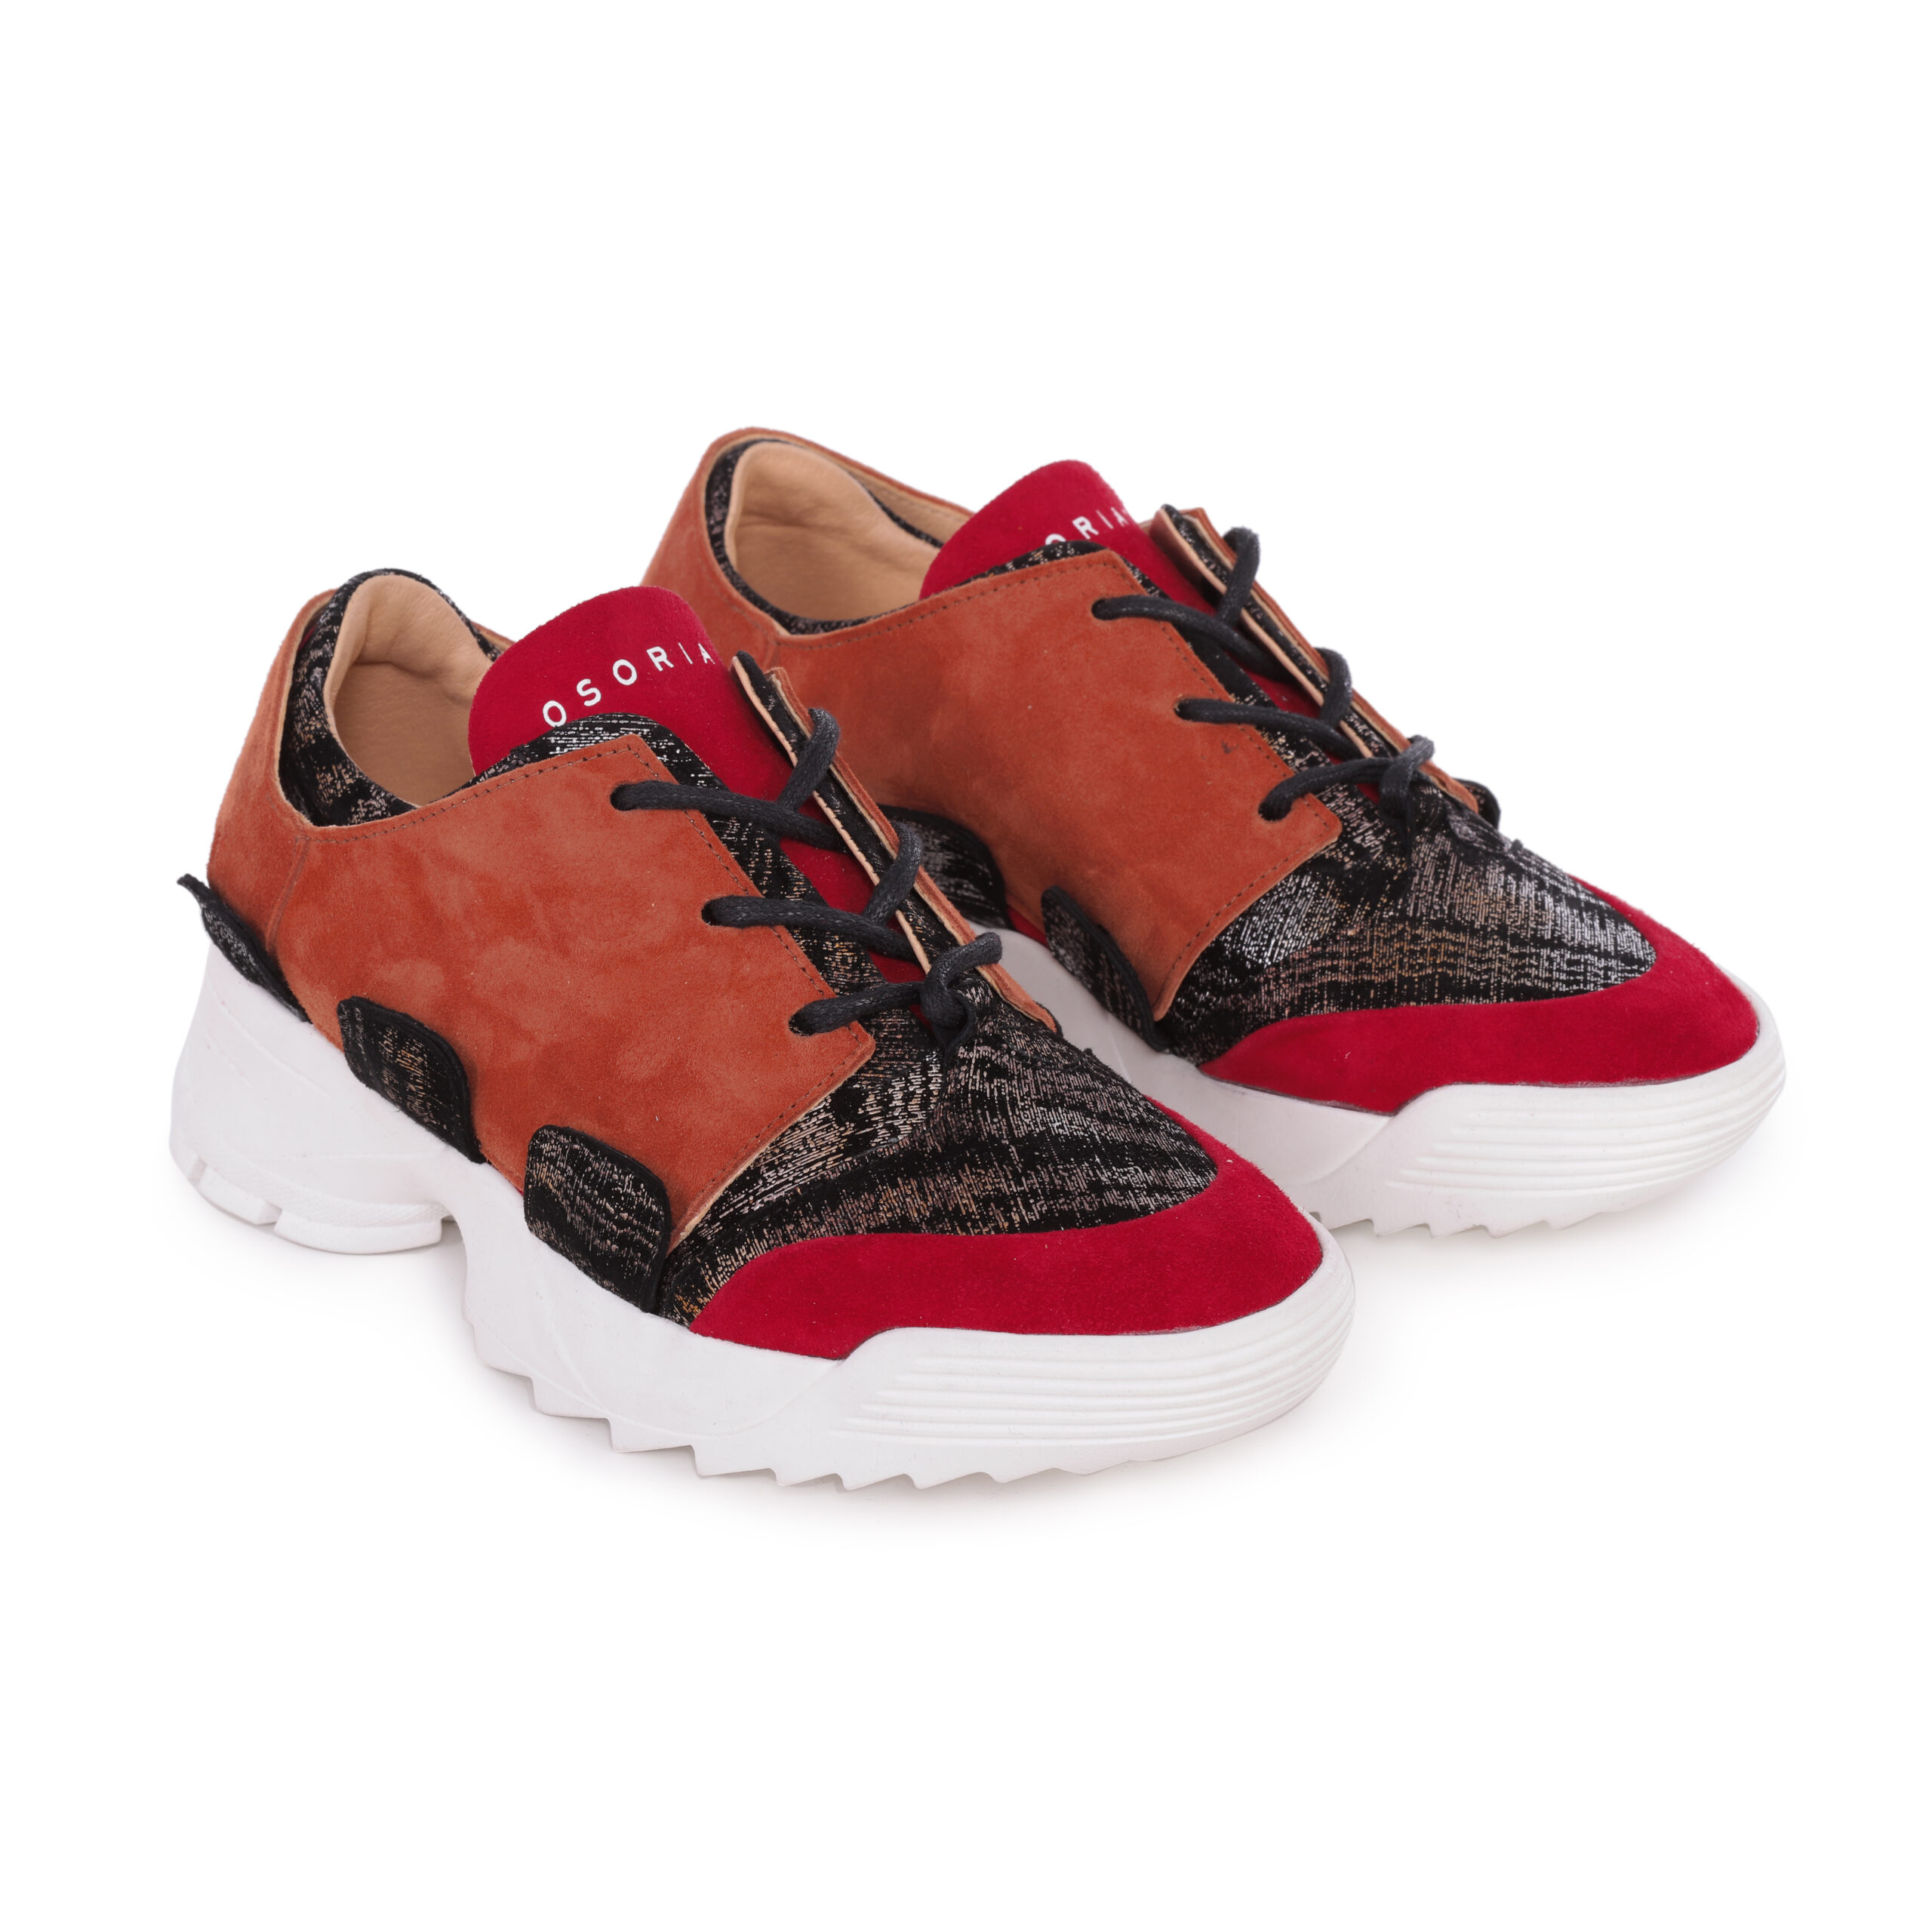 OSORIATI - Modèle de sneackers rouge imprimé avec saddle rouge